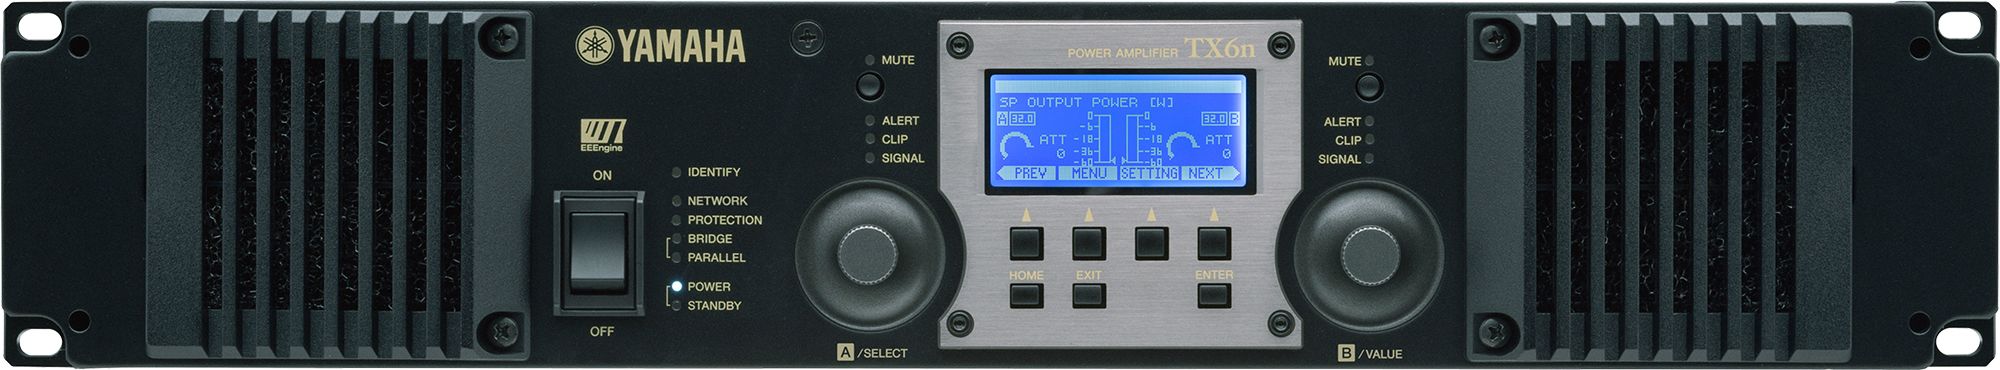 TX6n Power Amplifiers